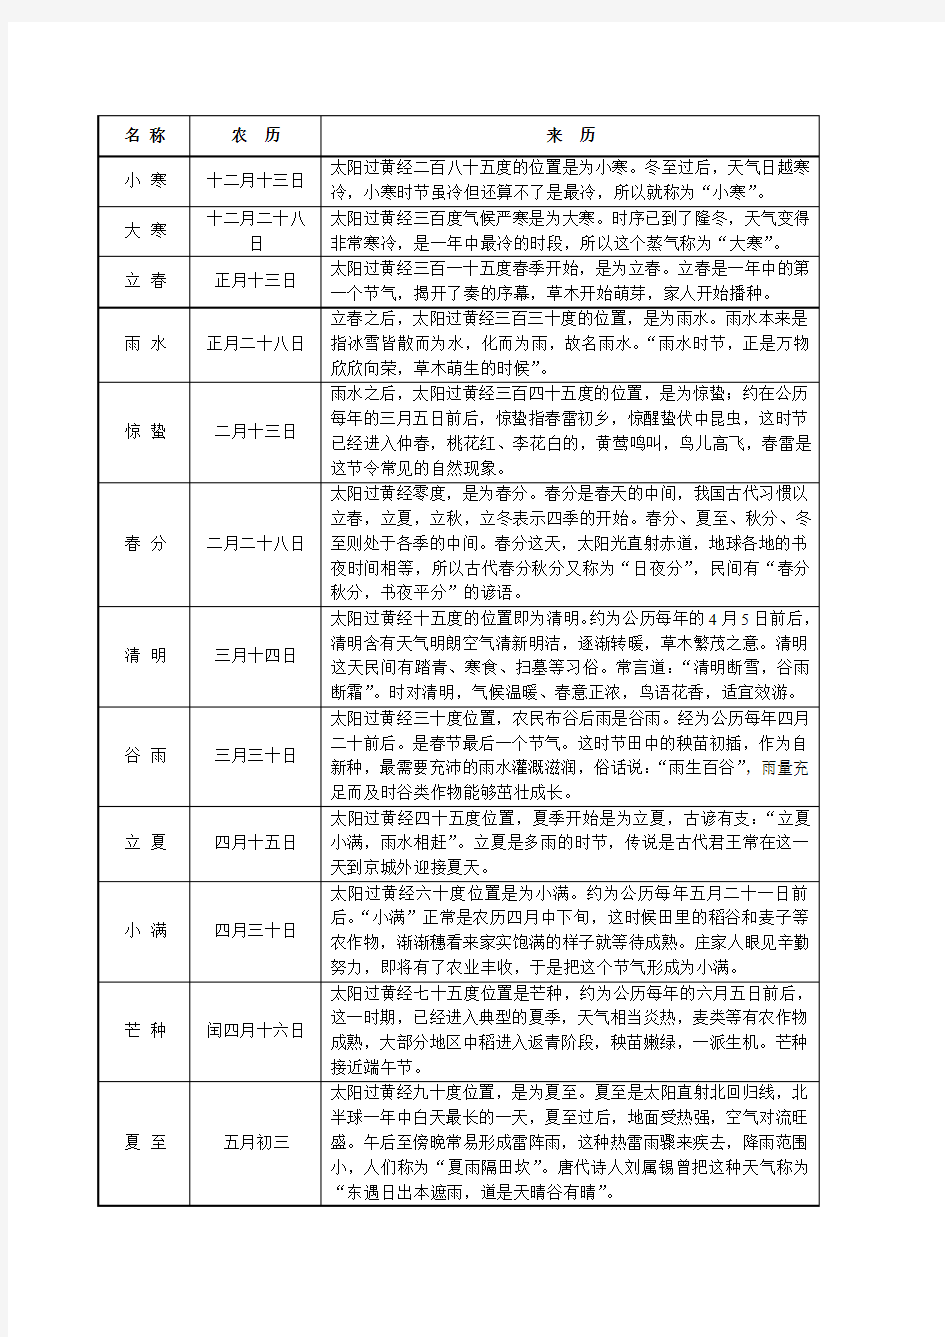 中国农历24个节气说明